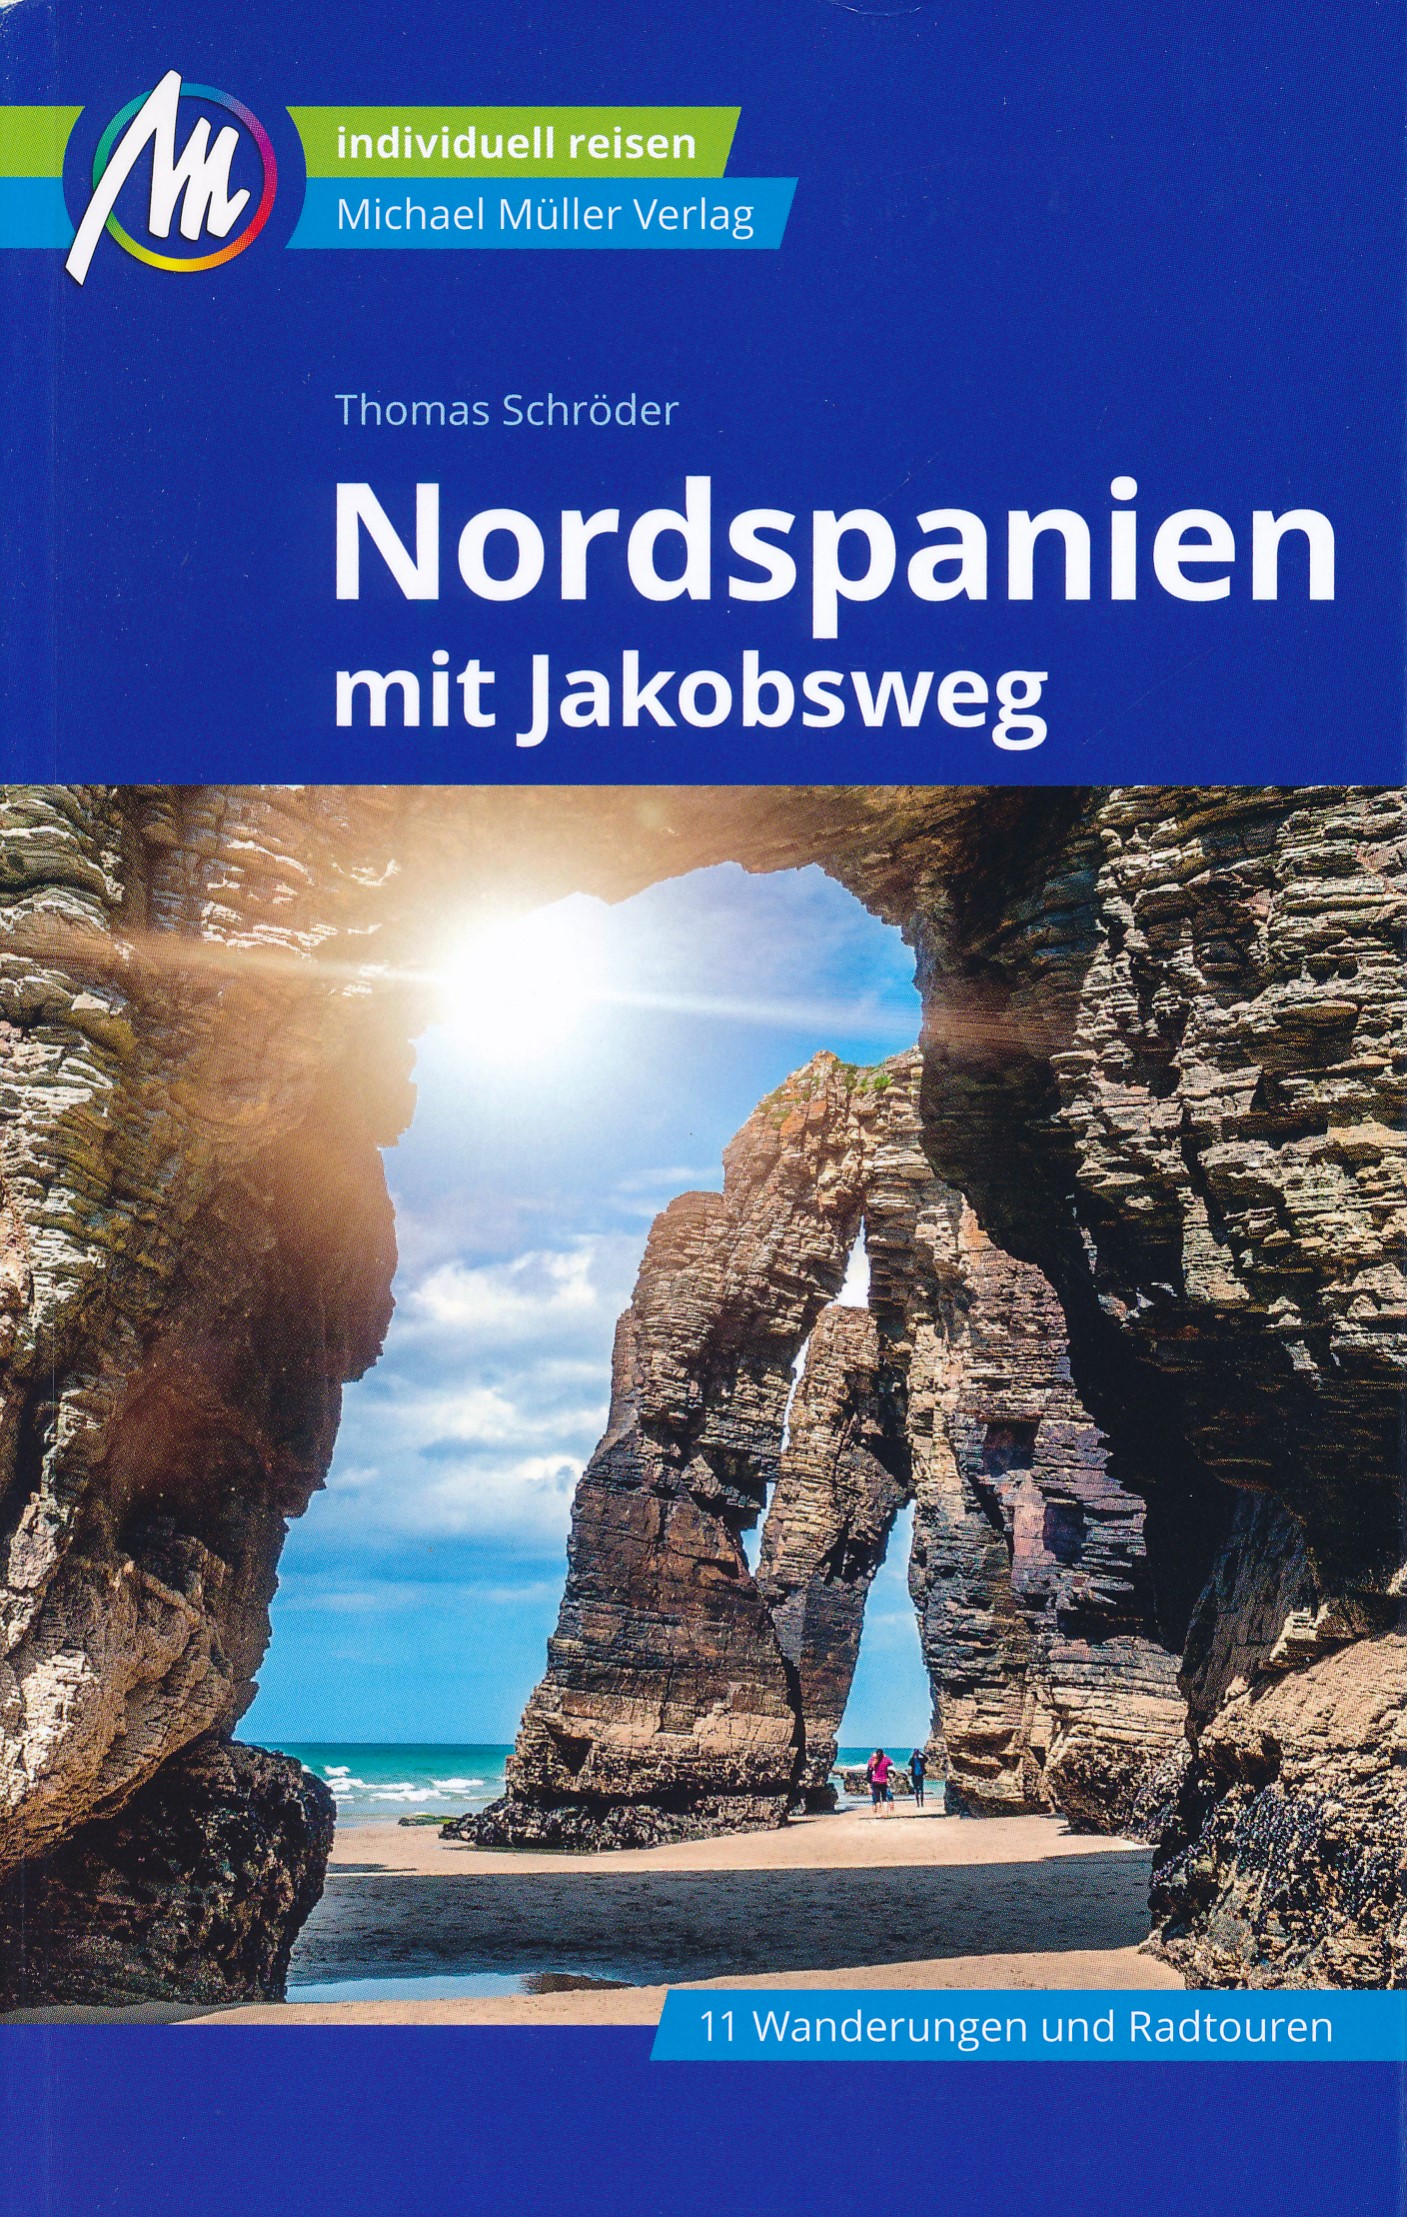 Online bestellen: Reisgids Nordspanien mit Jakobsweg - Noord-Spanje | Michael Müller Verlag